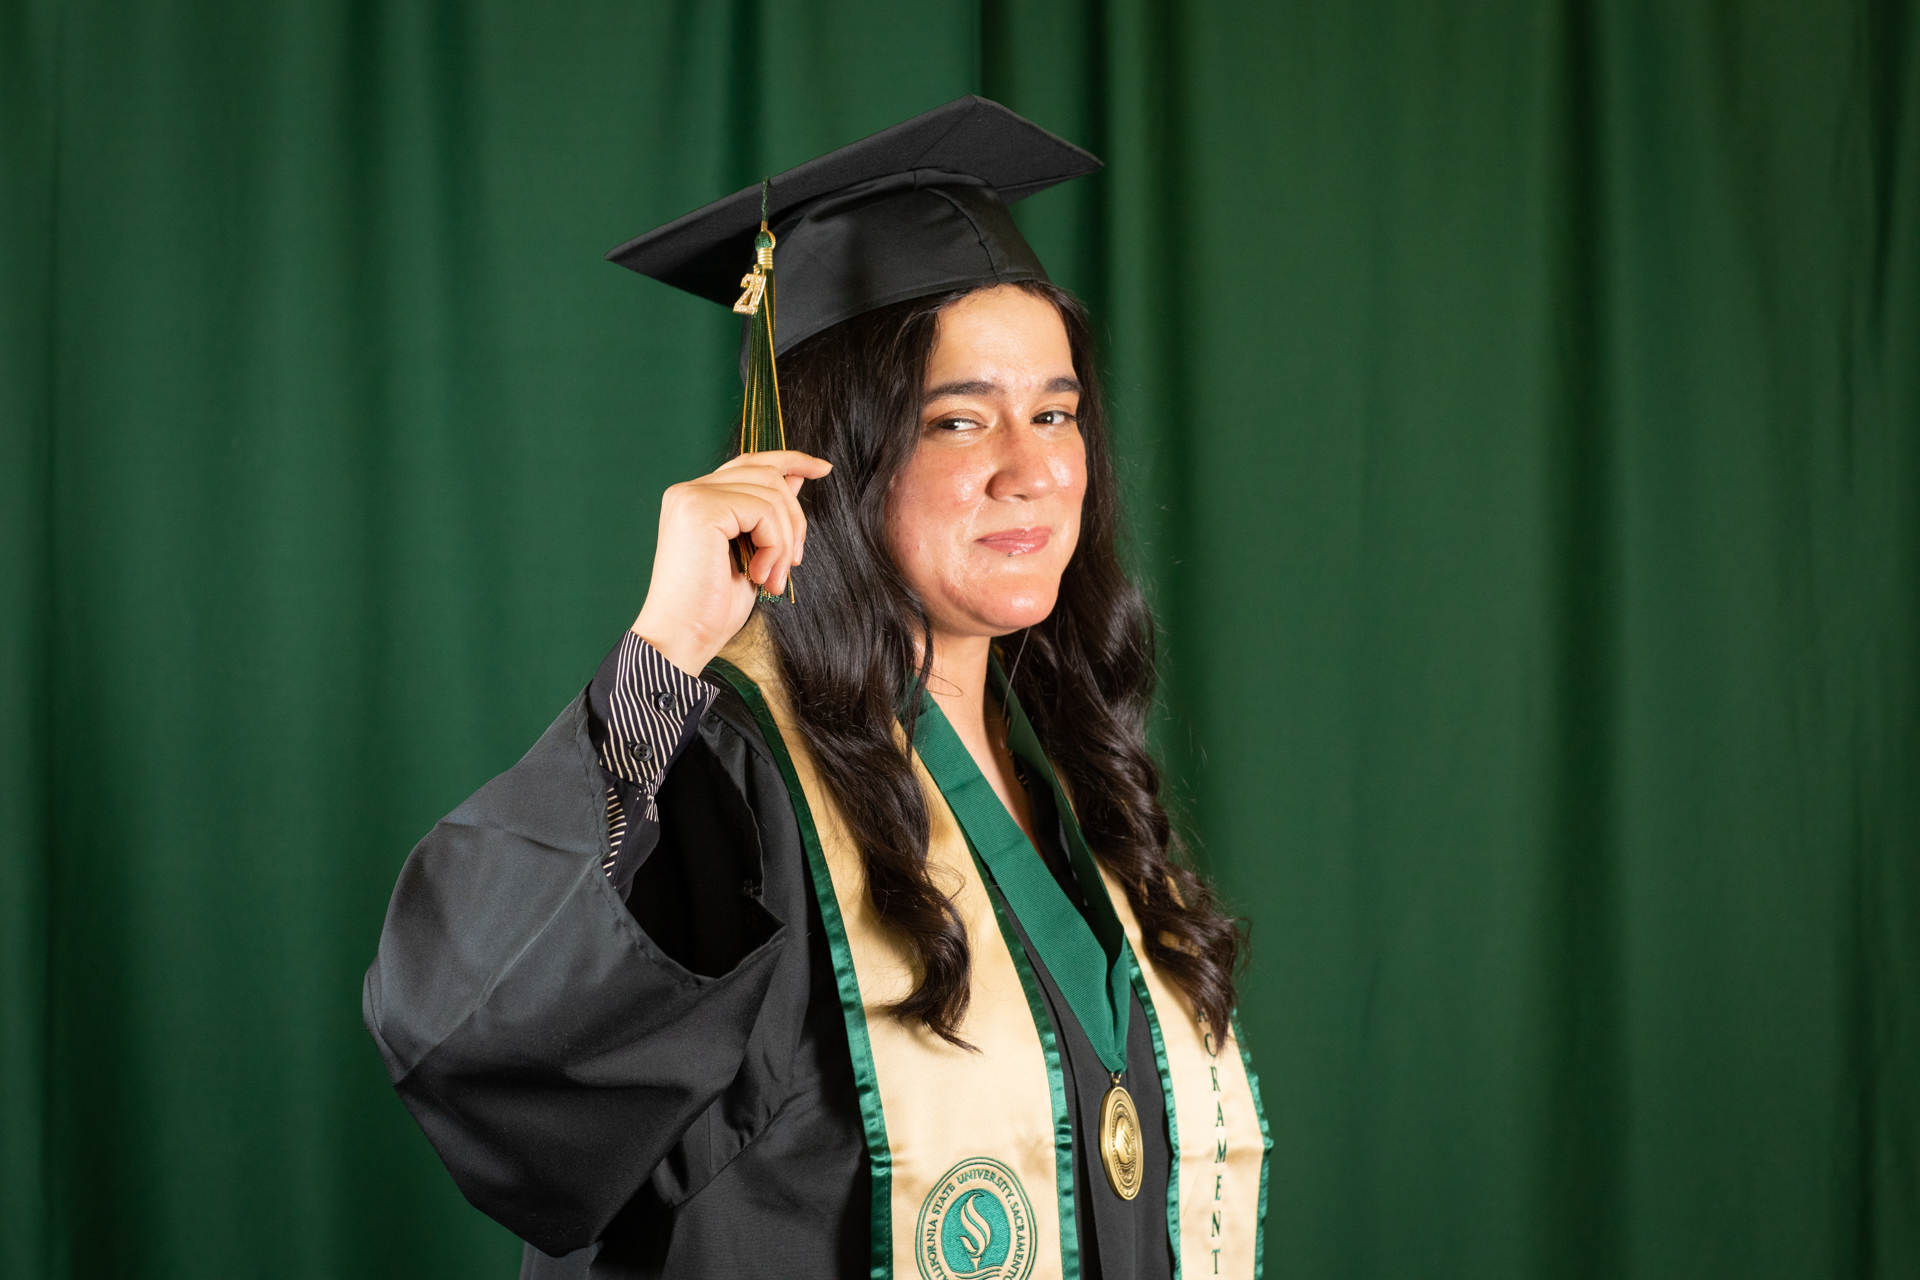 Silhouette image of RPTA Graduating Student Janai Belmonte